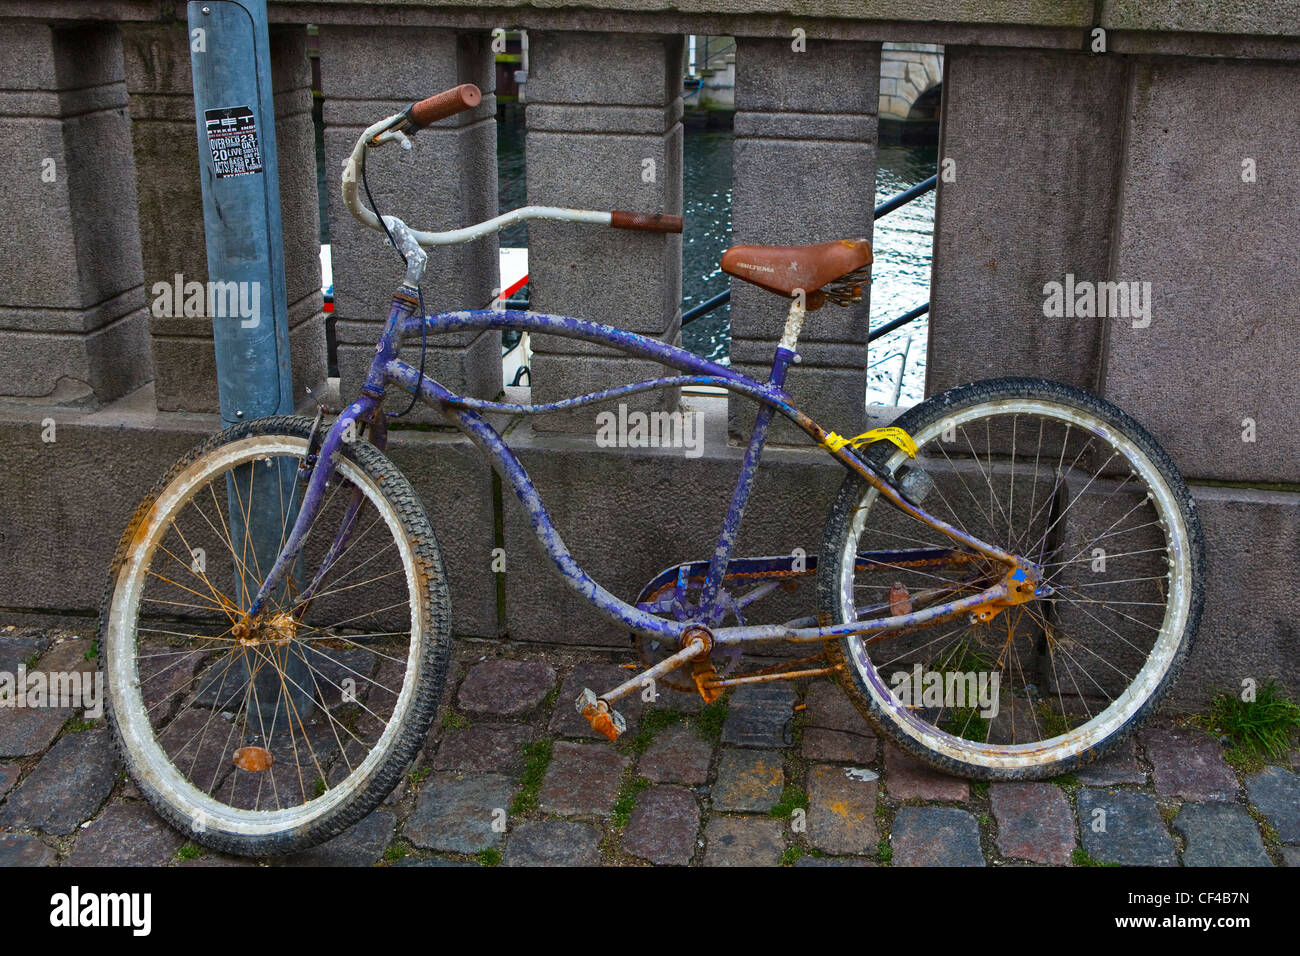 Vieux vélo dans le quartier de Christiana à Copenhague, Danemark, Scandinavie, Europe du Nord, Baltique, de l'UNION EUROPÉENNE Banque D'Images